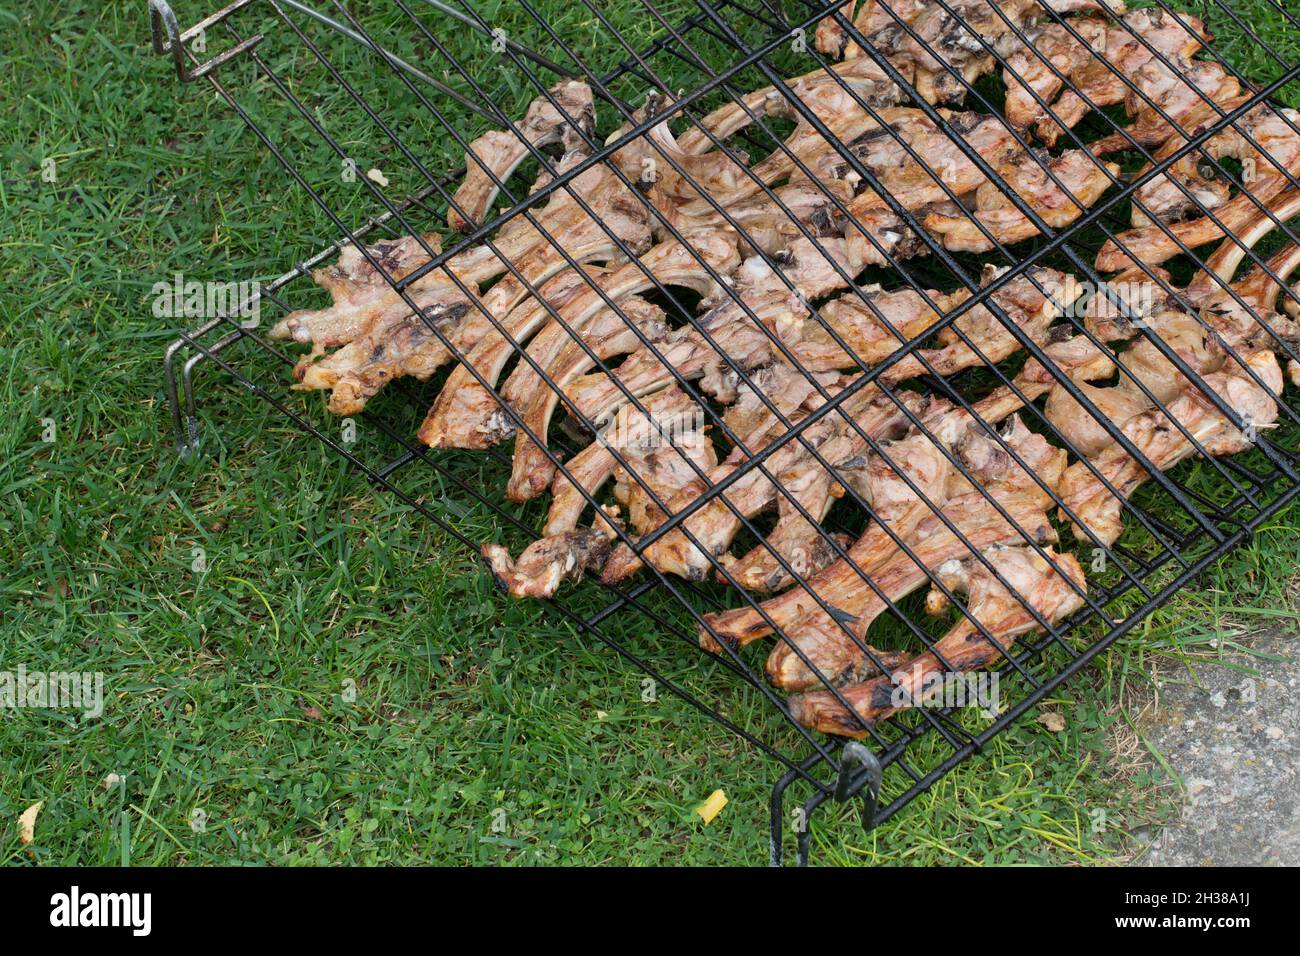 Gros plan de délicieux côtelettes d'agneau dans une grille de cuisson.Prêt à manger.Arrière-plan vert Banque D'Images